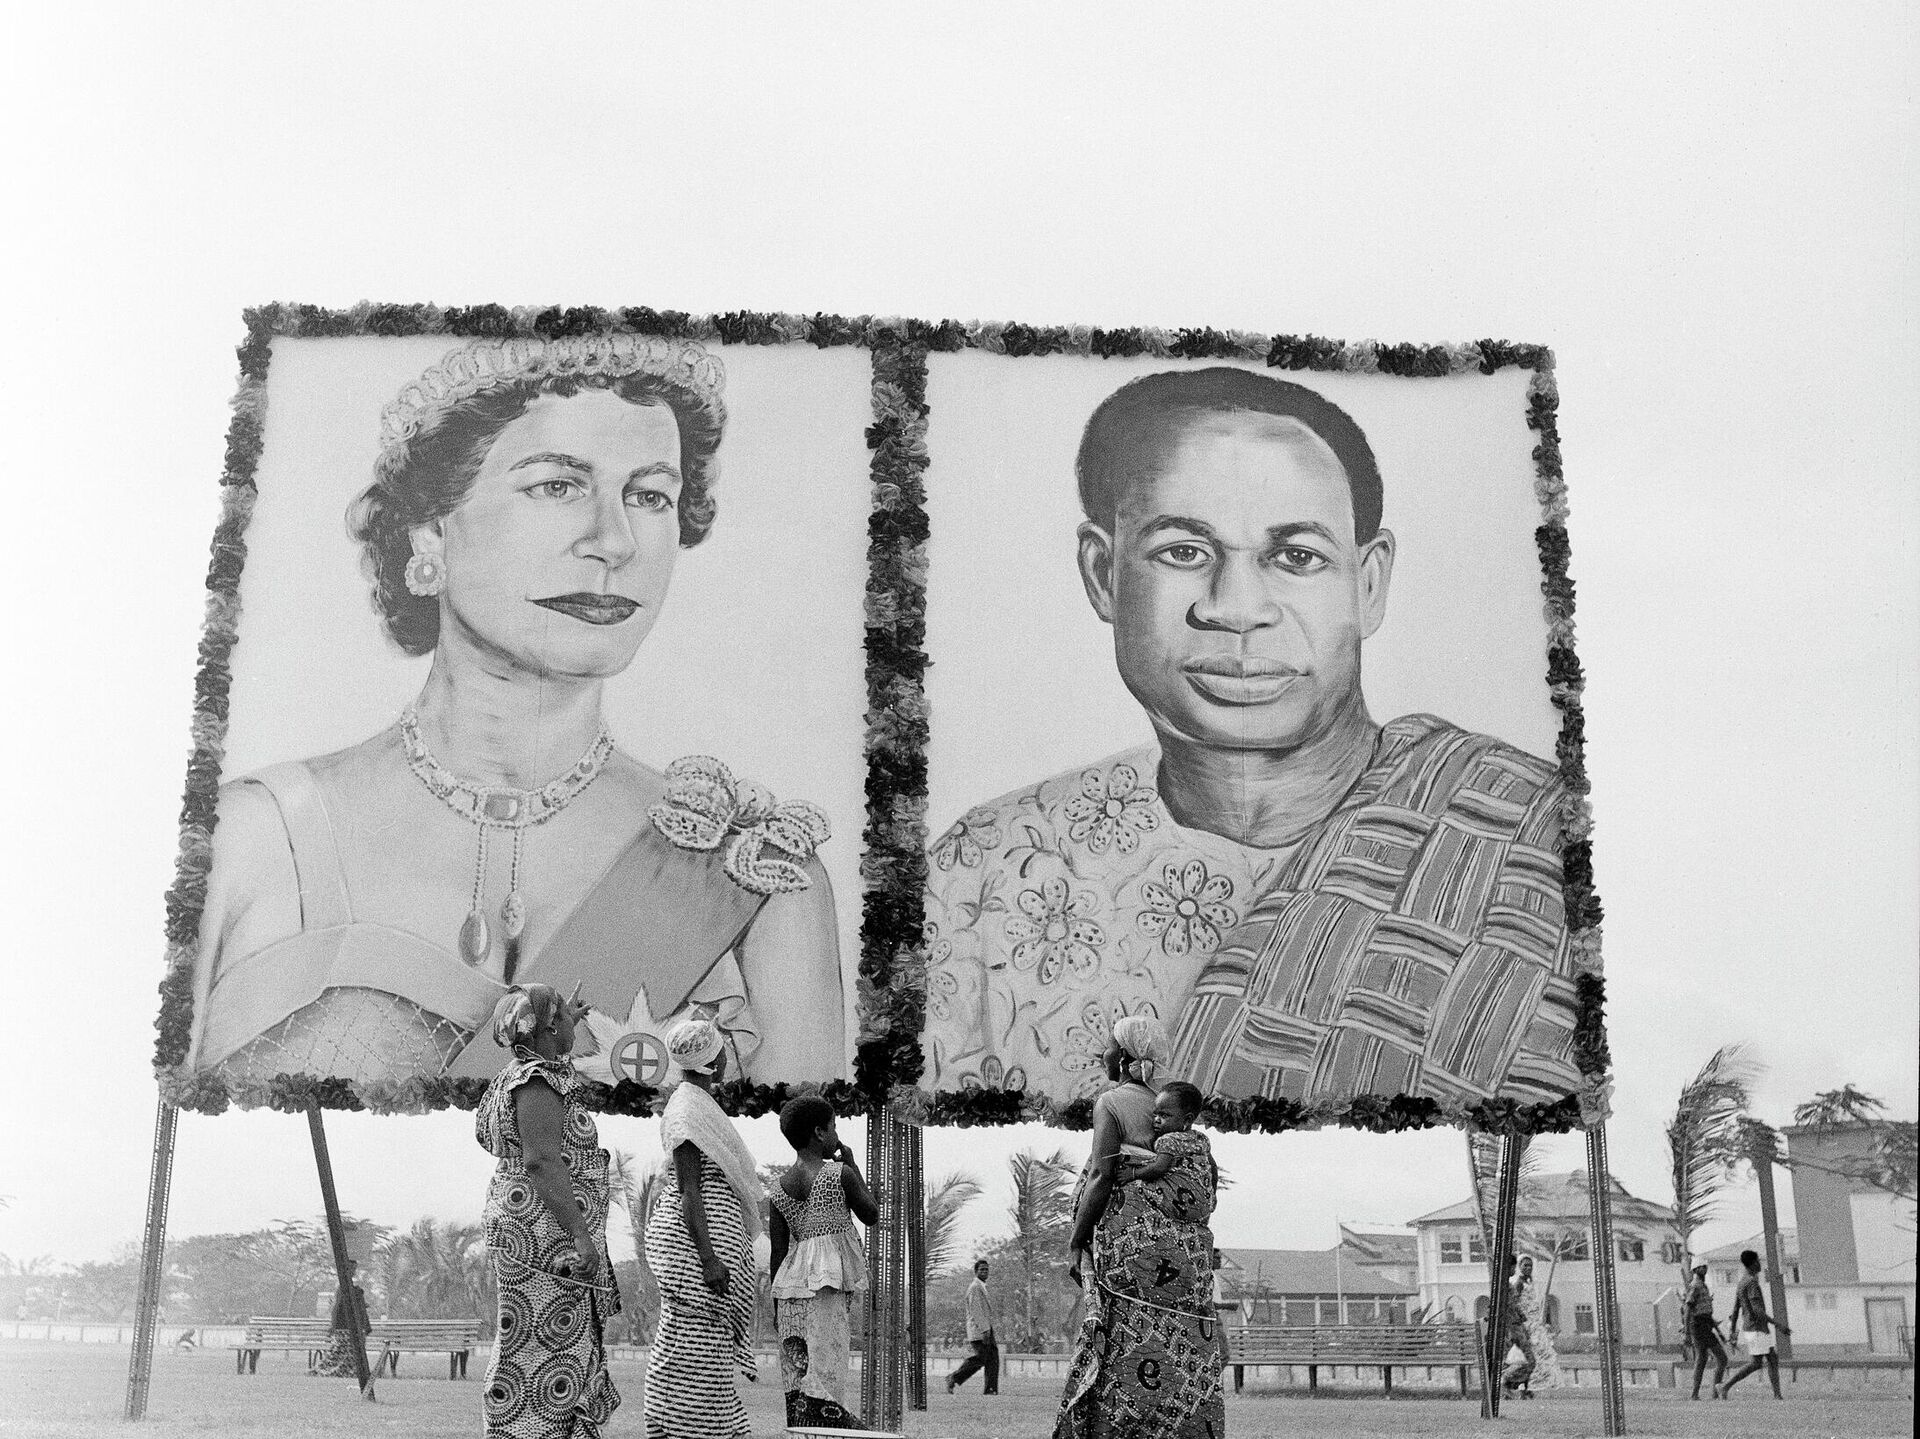 5 Historic photos showing Queen Elizabeth II meeting Ghana's presidents 